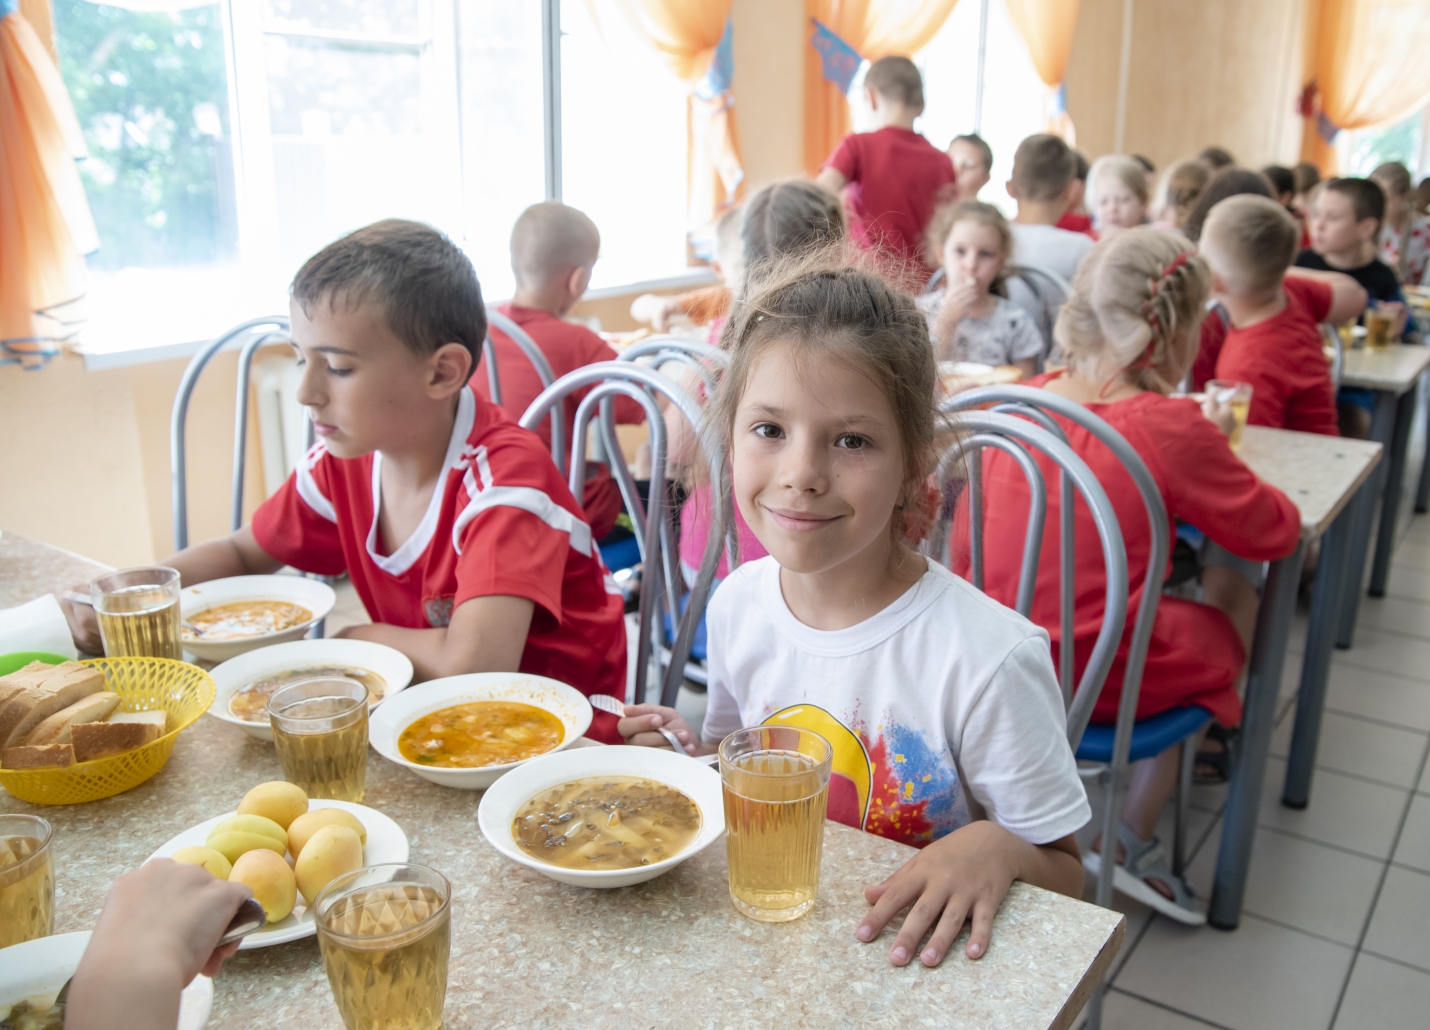 Президент России Владимир Путин подписал закон о предоставлении бесплатного горячего питания учащимся начальной школы